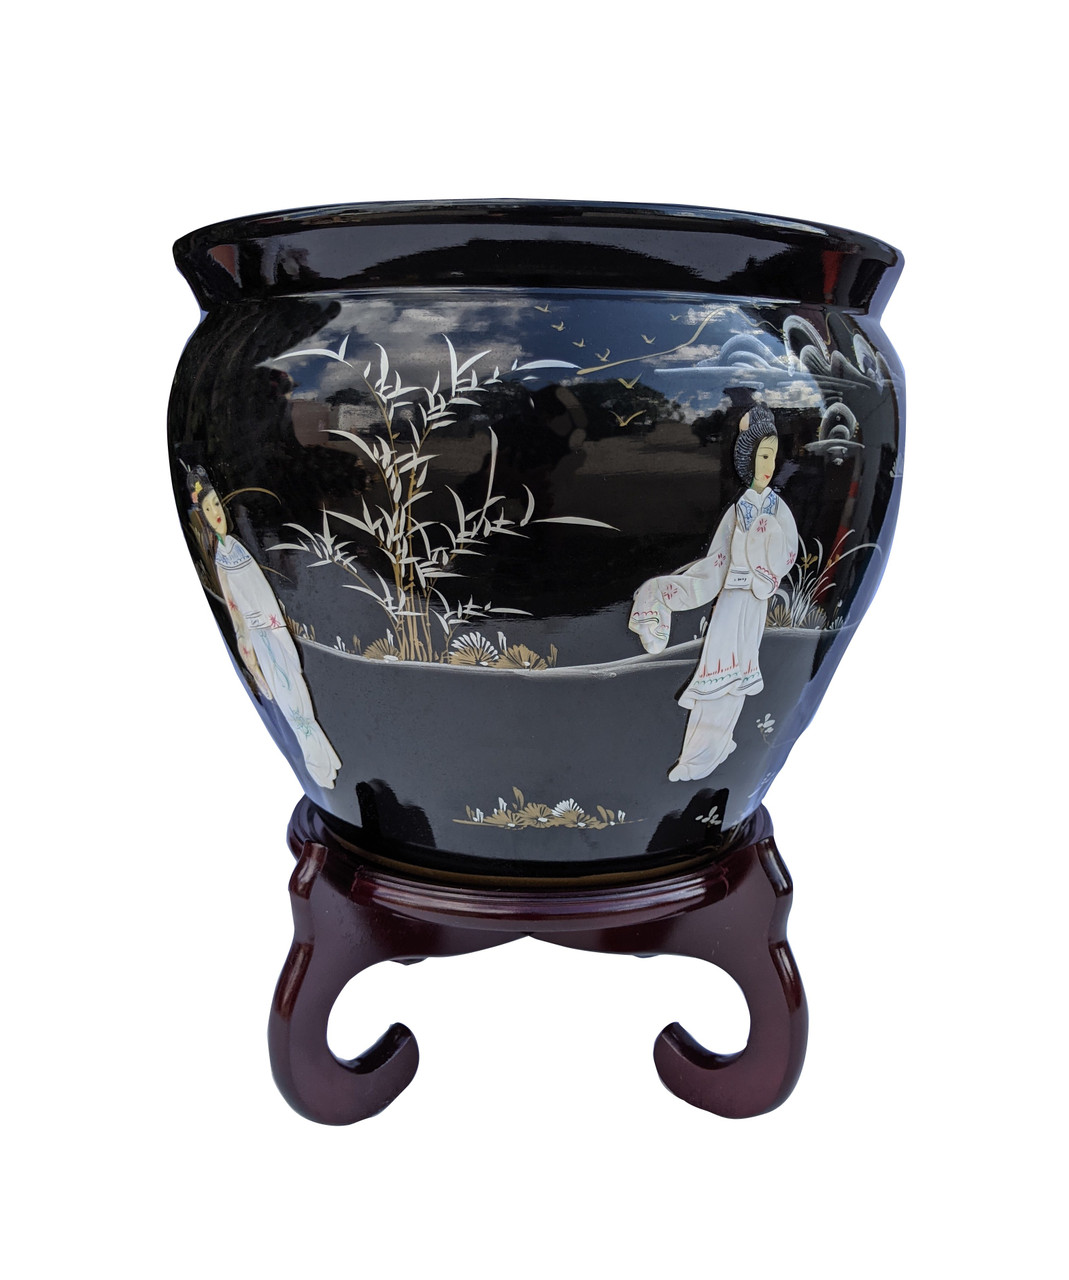  YANGMEI 3.25 Black Set of 4 Home Decorative Porcelain